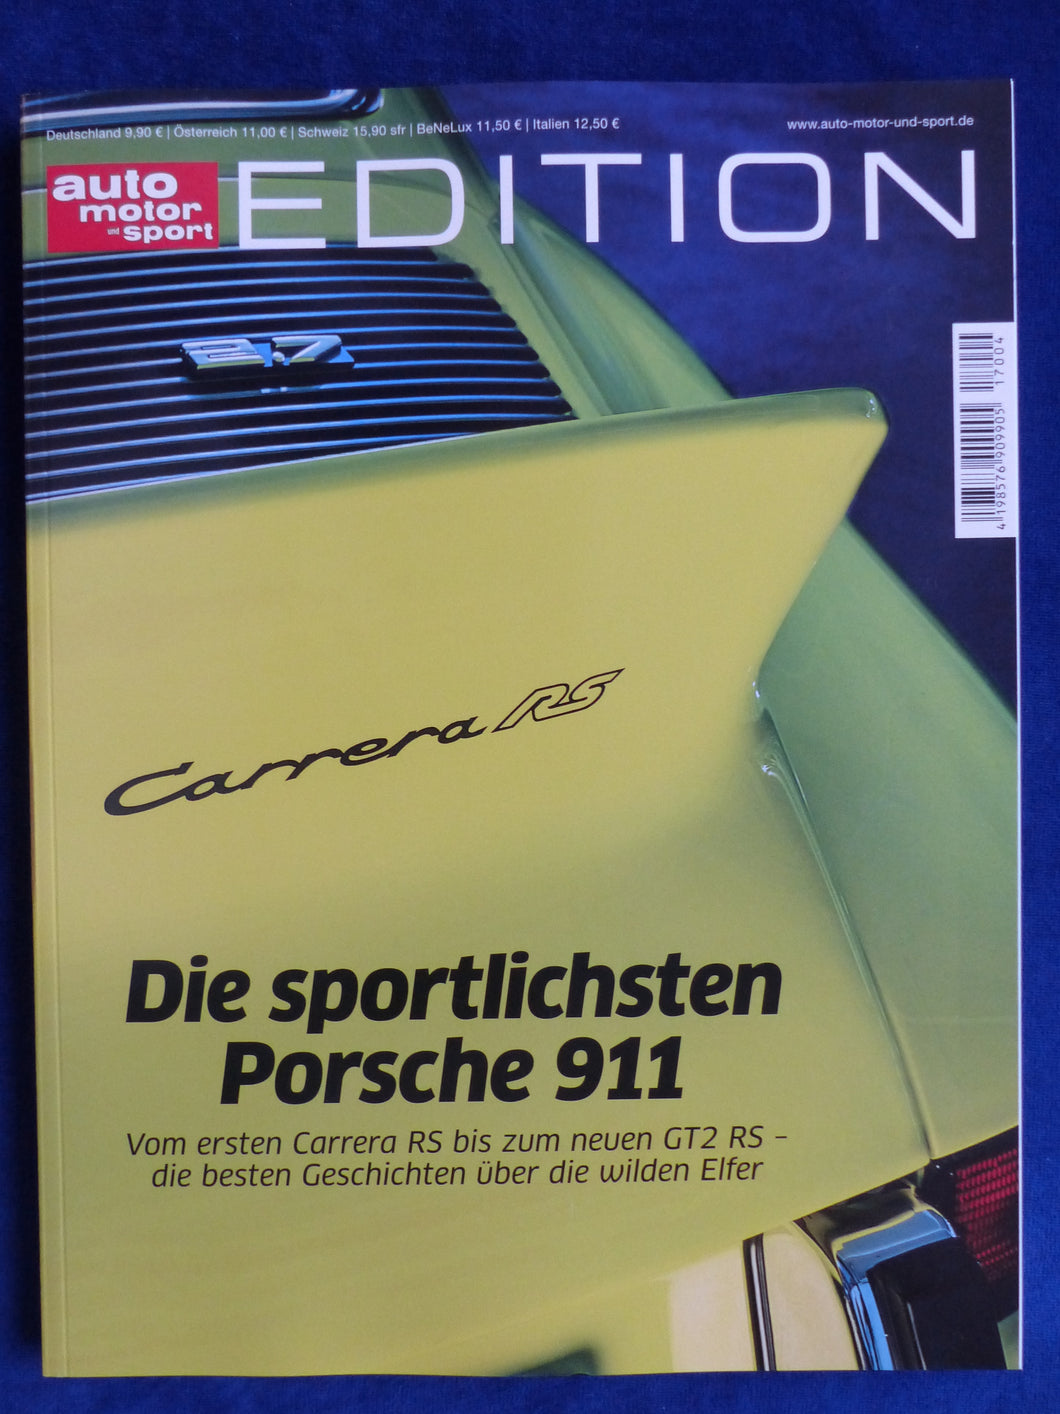 Auto Motor Sport Edition Die sportlichsten Porsche 911 GT3 RS GT2 Carrera 959